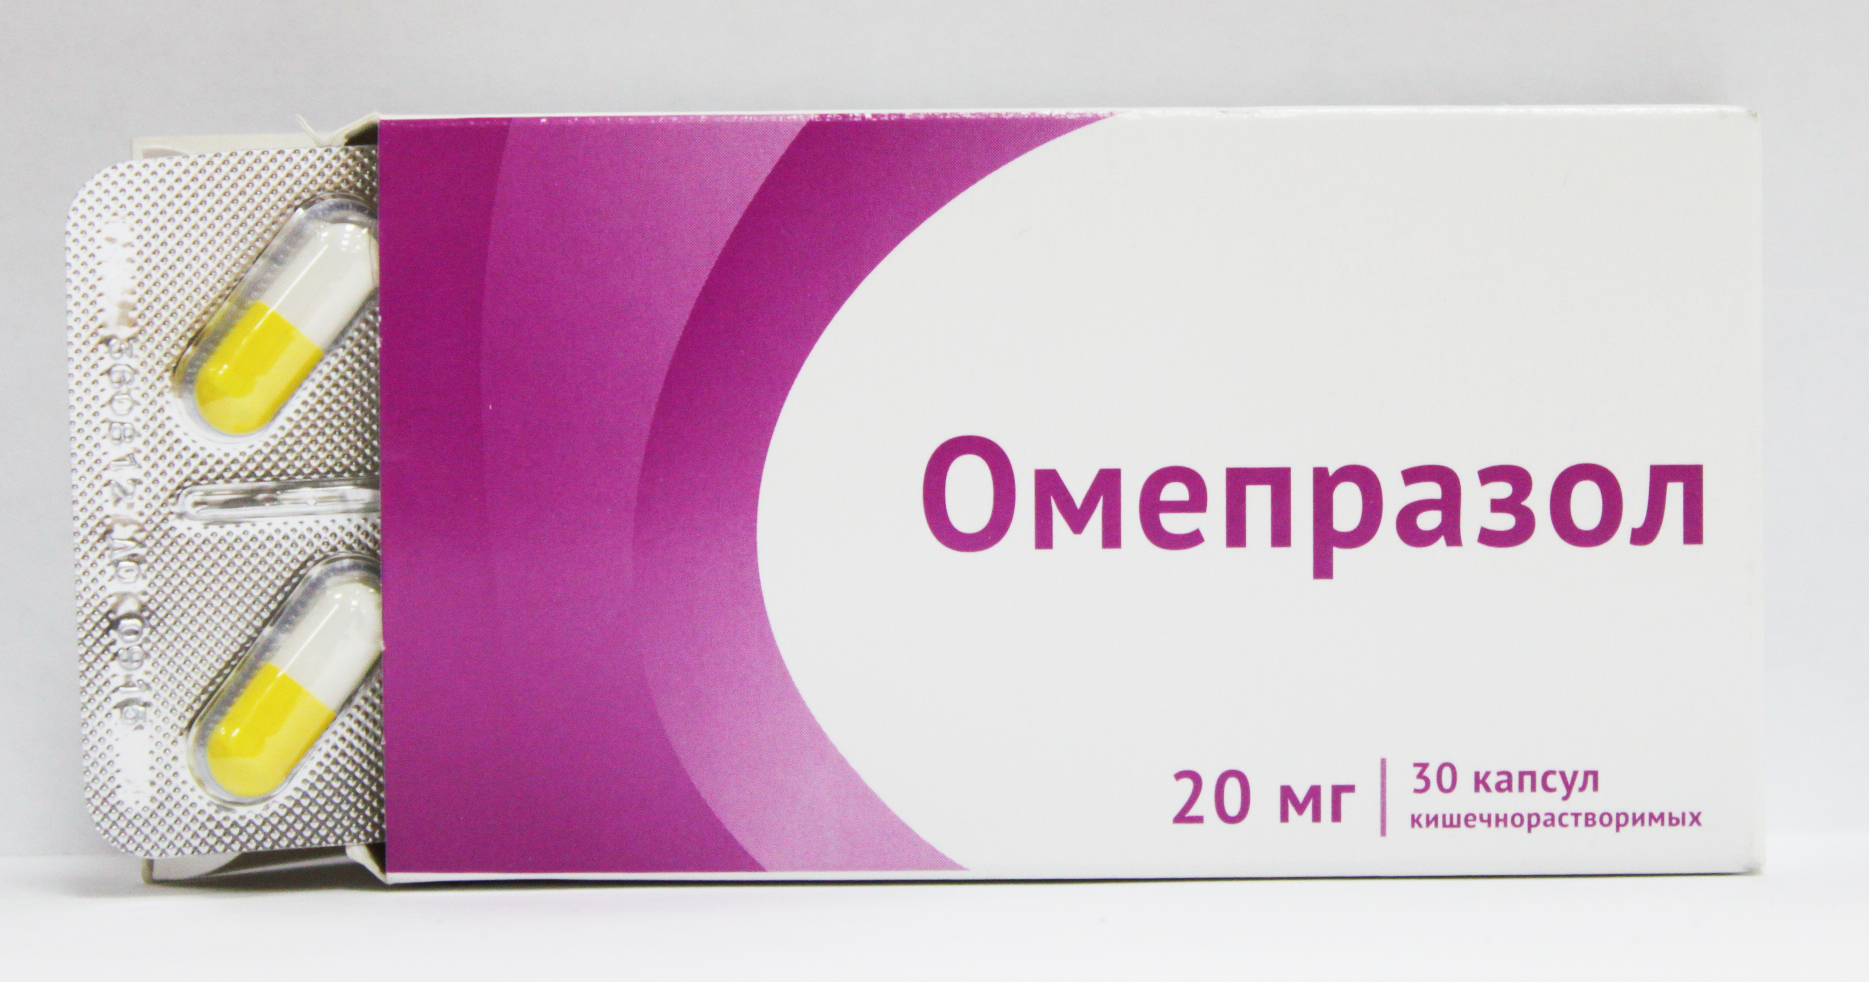 Омепразол повышает кислотность. Омепразол 20 мг. Омепразол 30 капсул. Омепразол капсулы 20. Омепразол [капс 20мг].